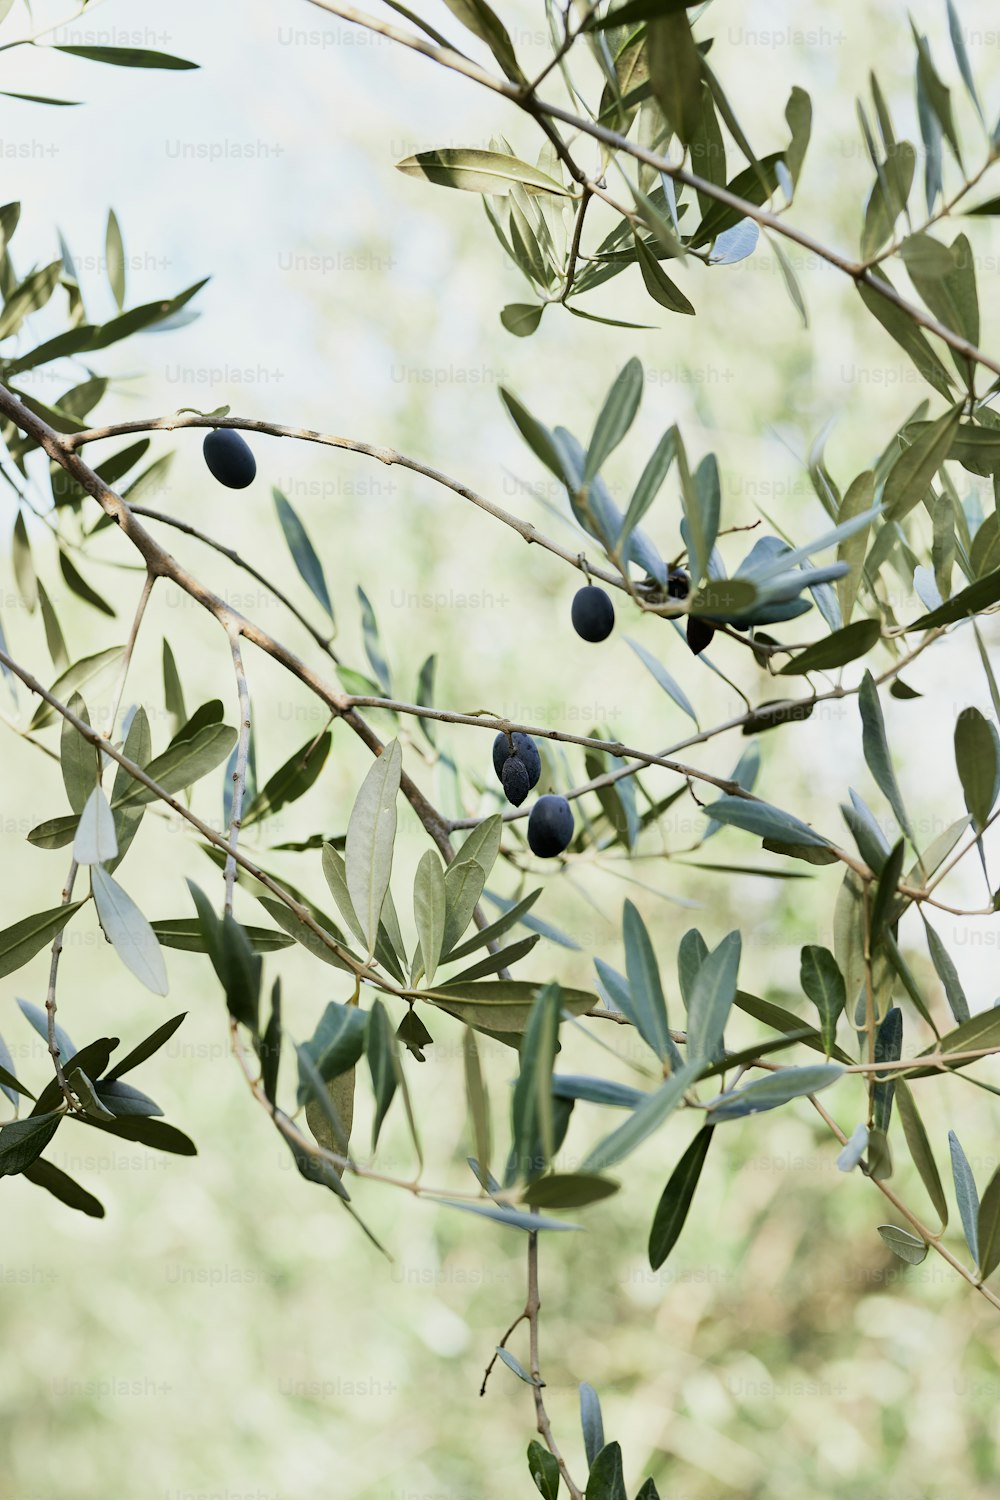 un olivier aux feuilles vertes et aux baies bleues